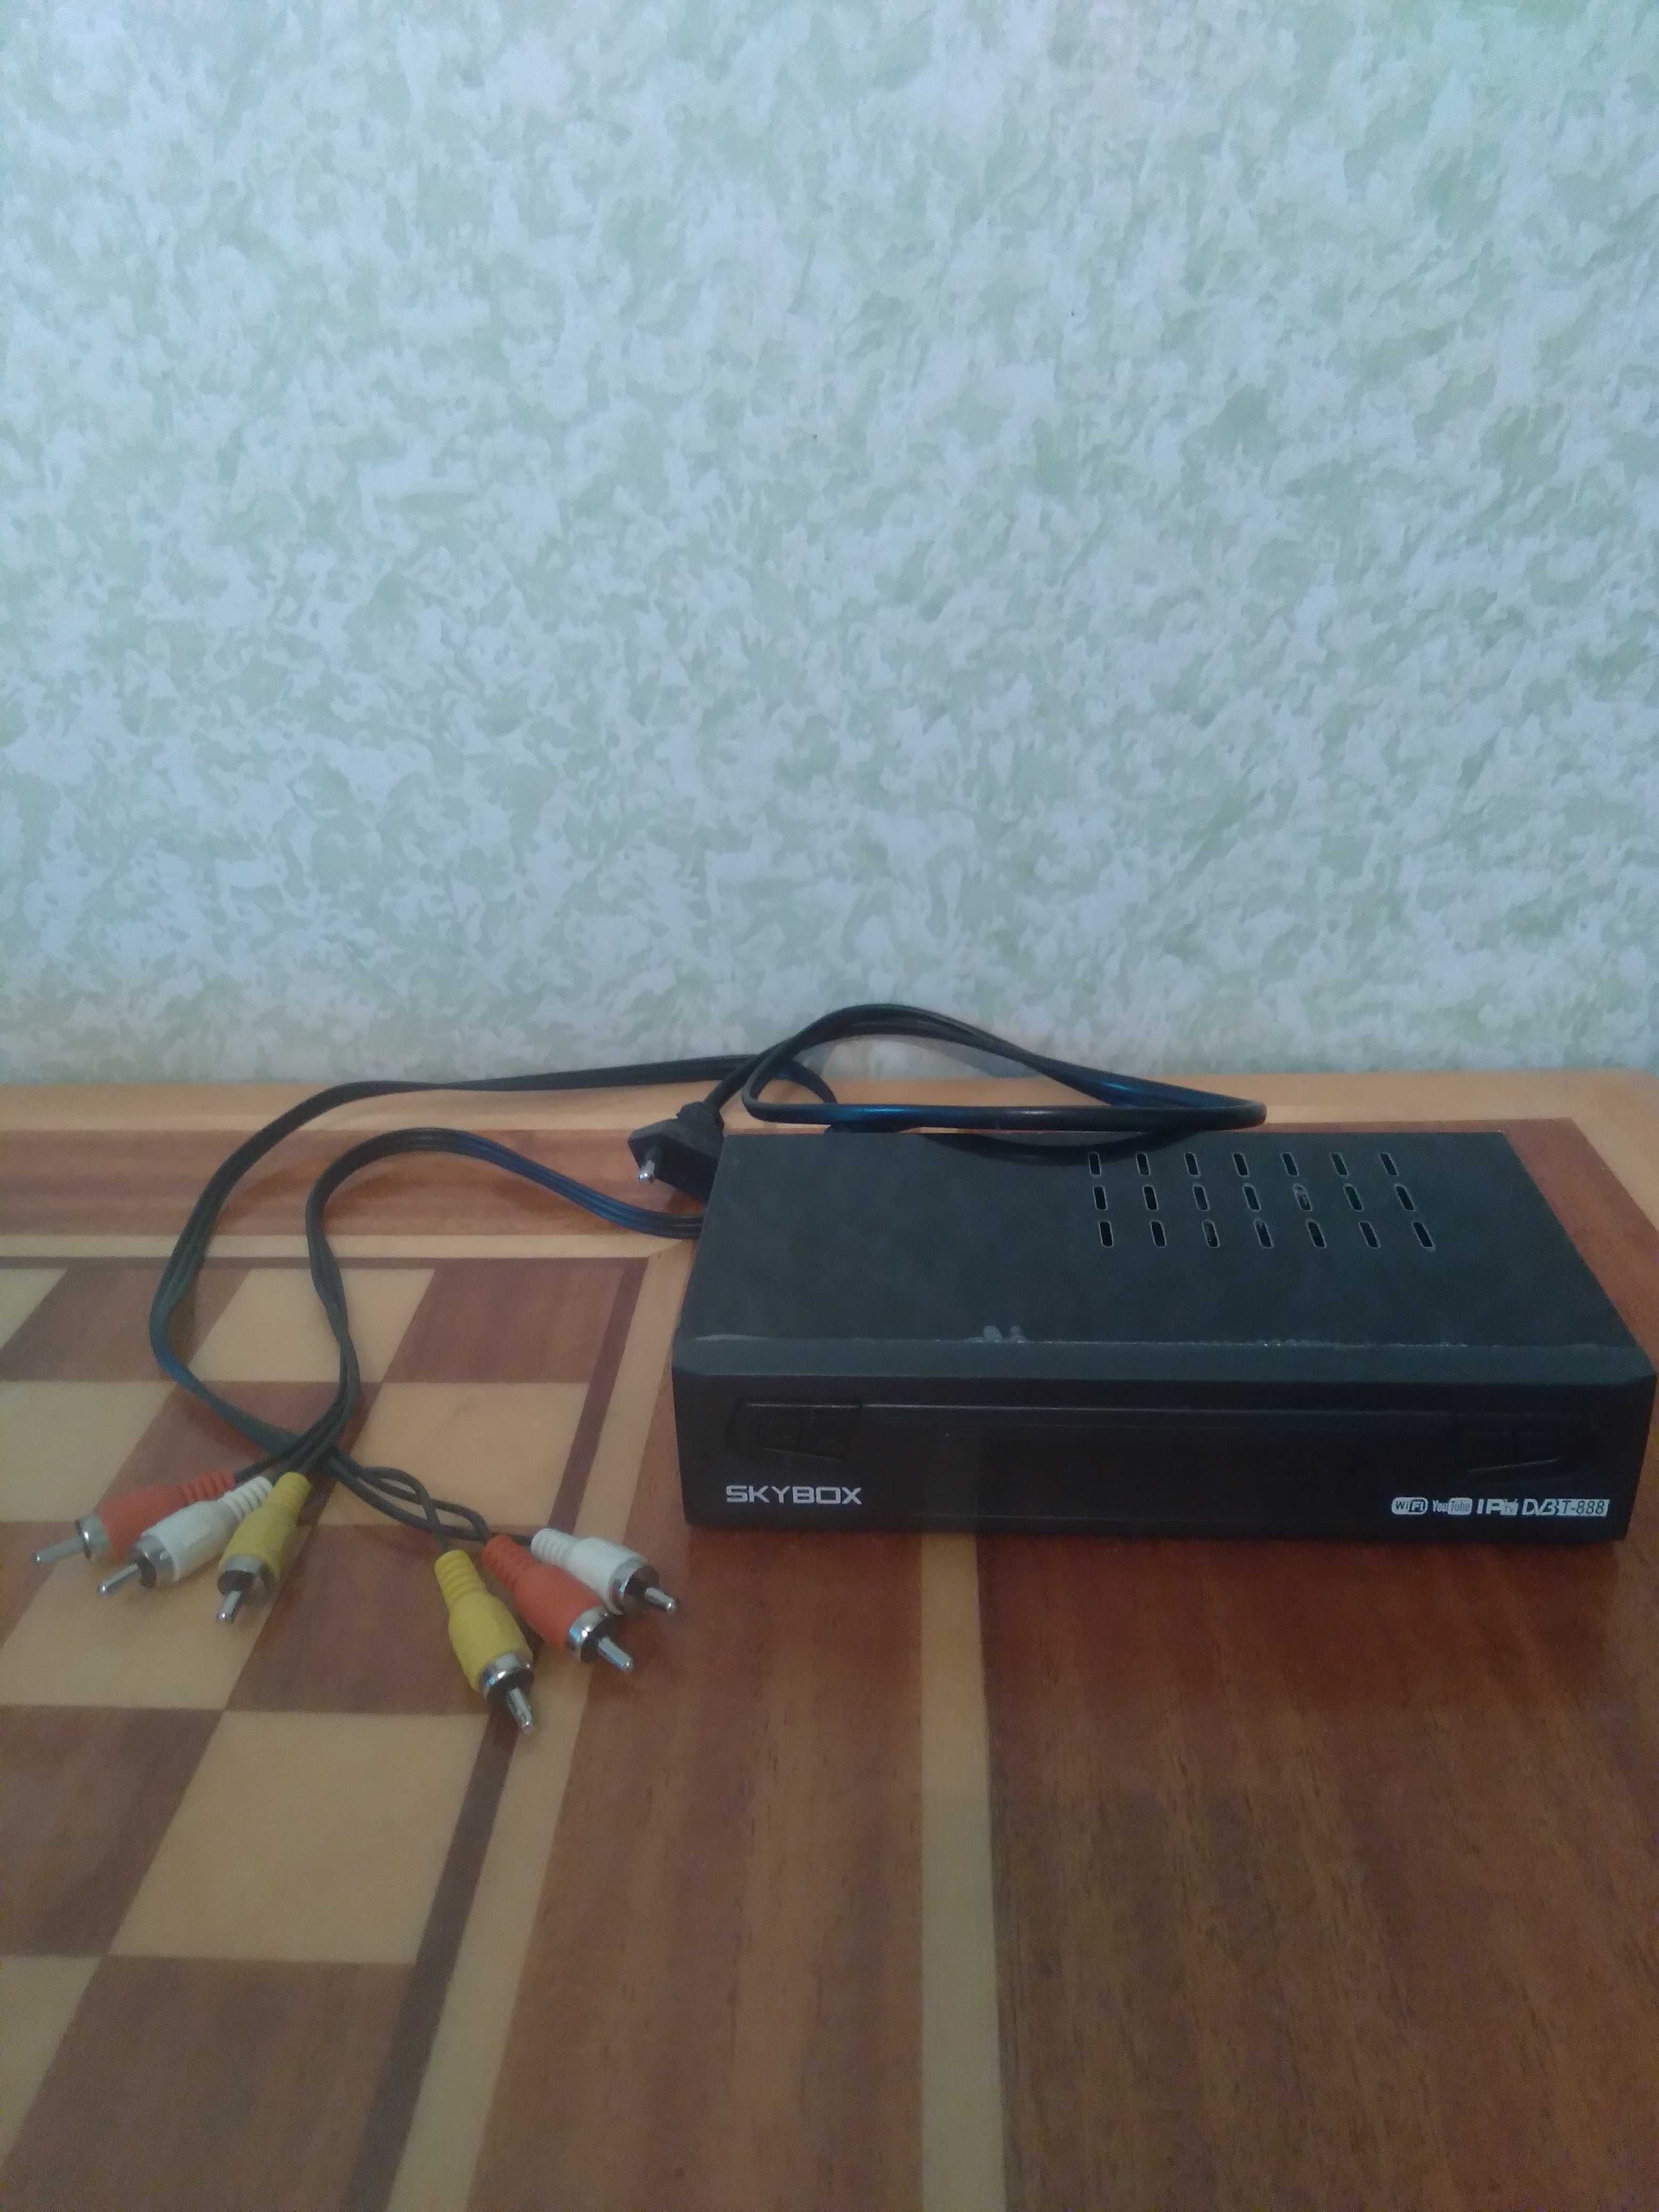 Продам цифровой эфирный приемник DVЗ Т-888 SKYBOX и комнатную антенну.